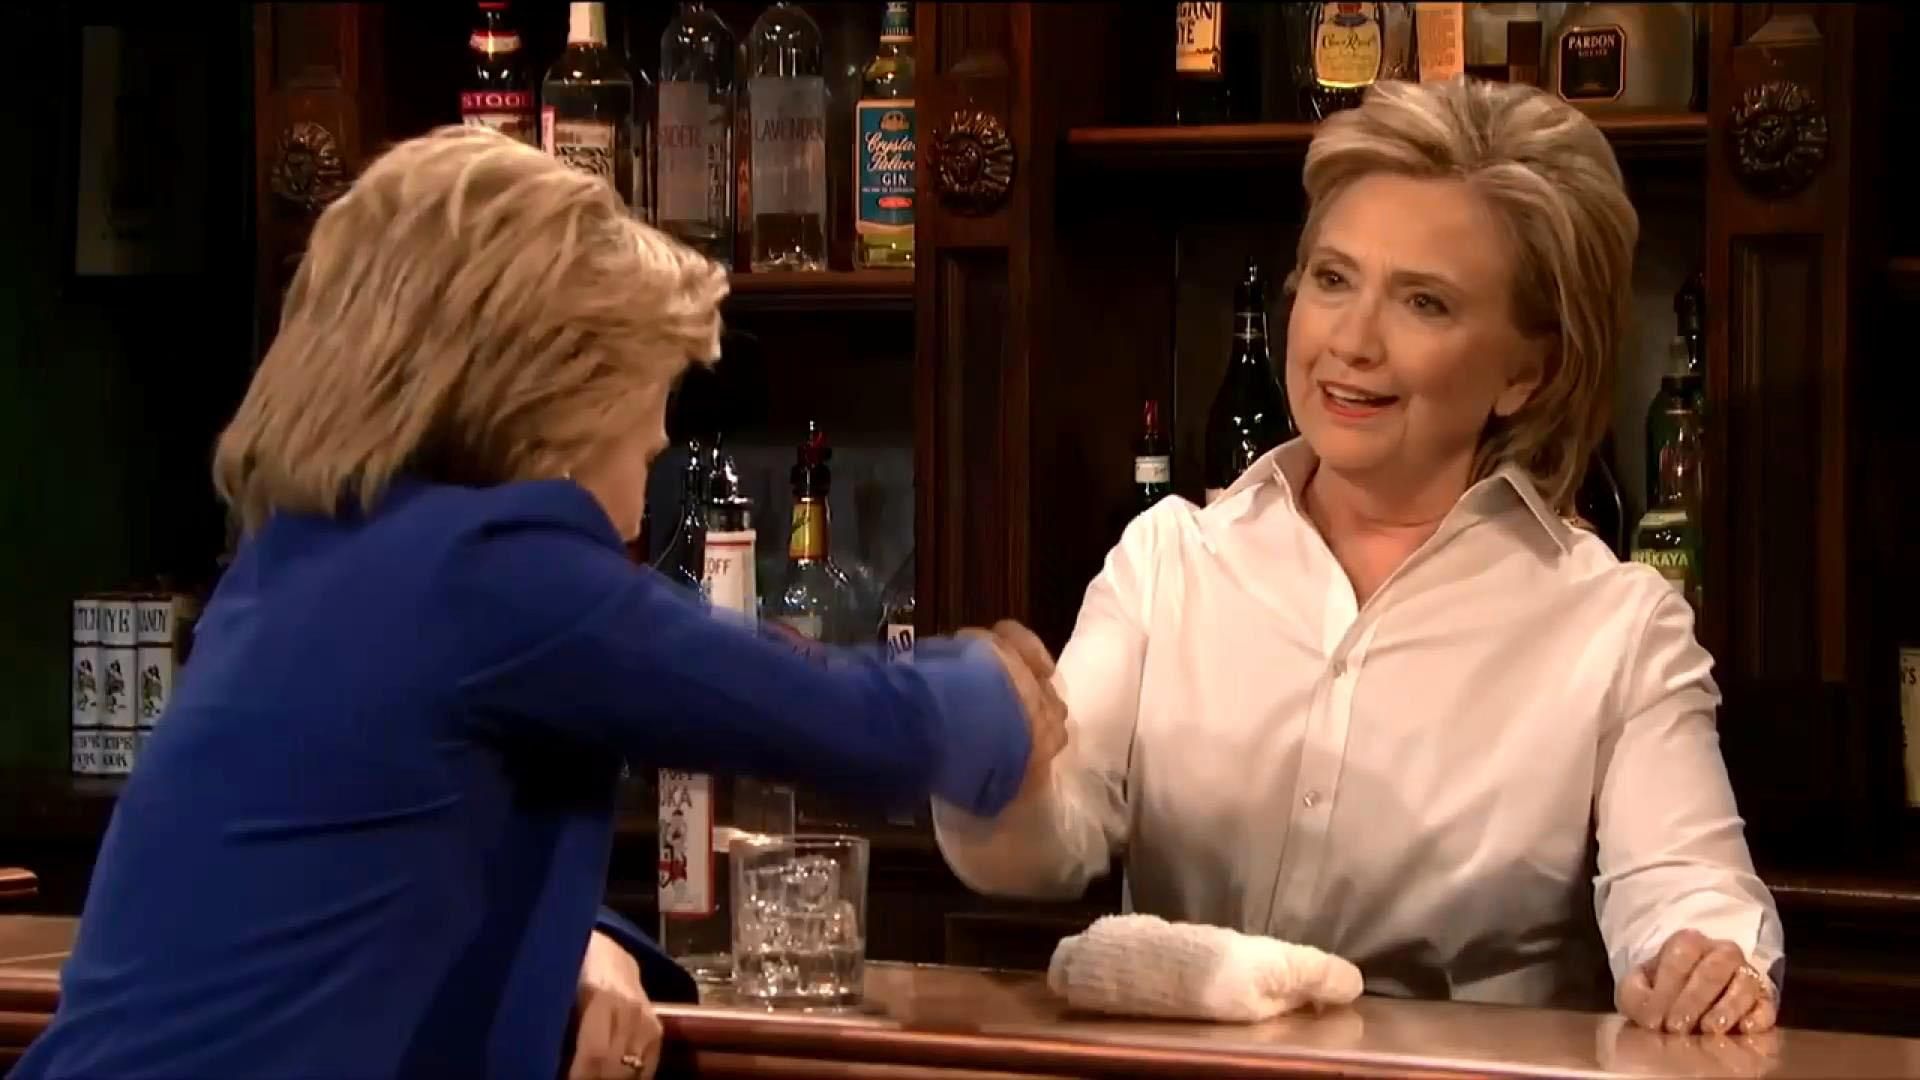 Хиллари Клинтон стала барменом и посмеялась с Трампа